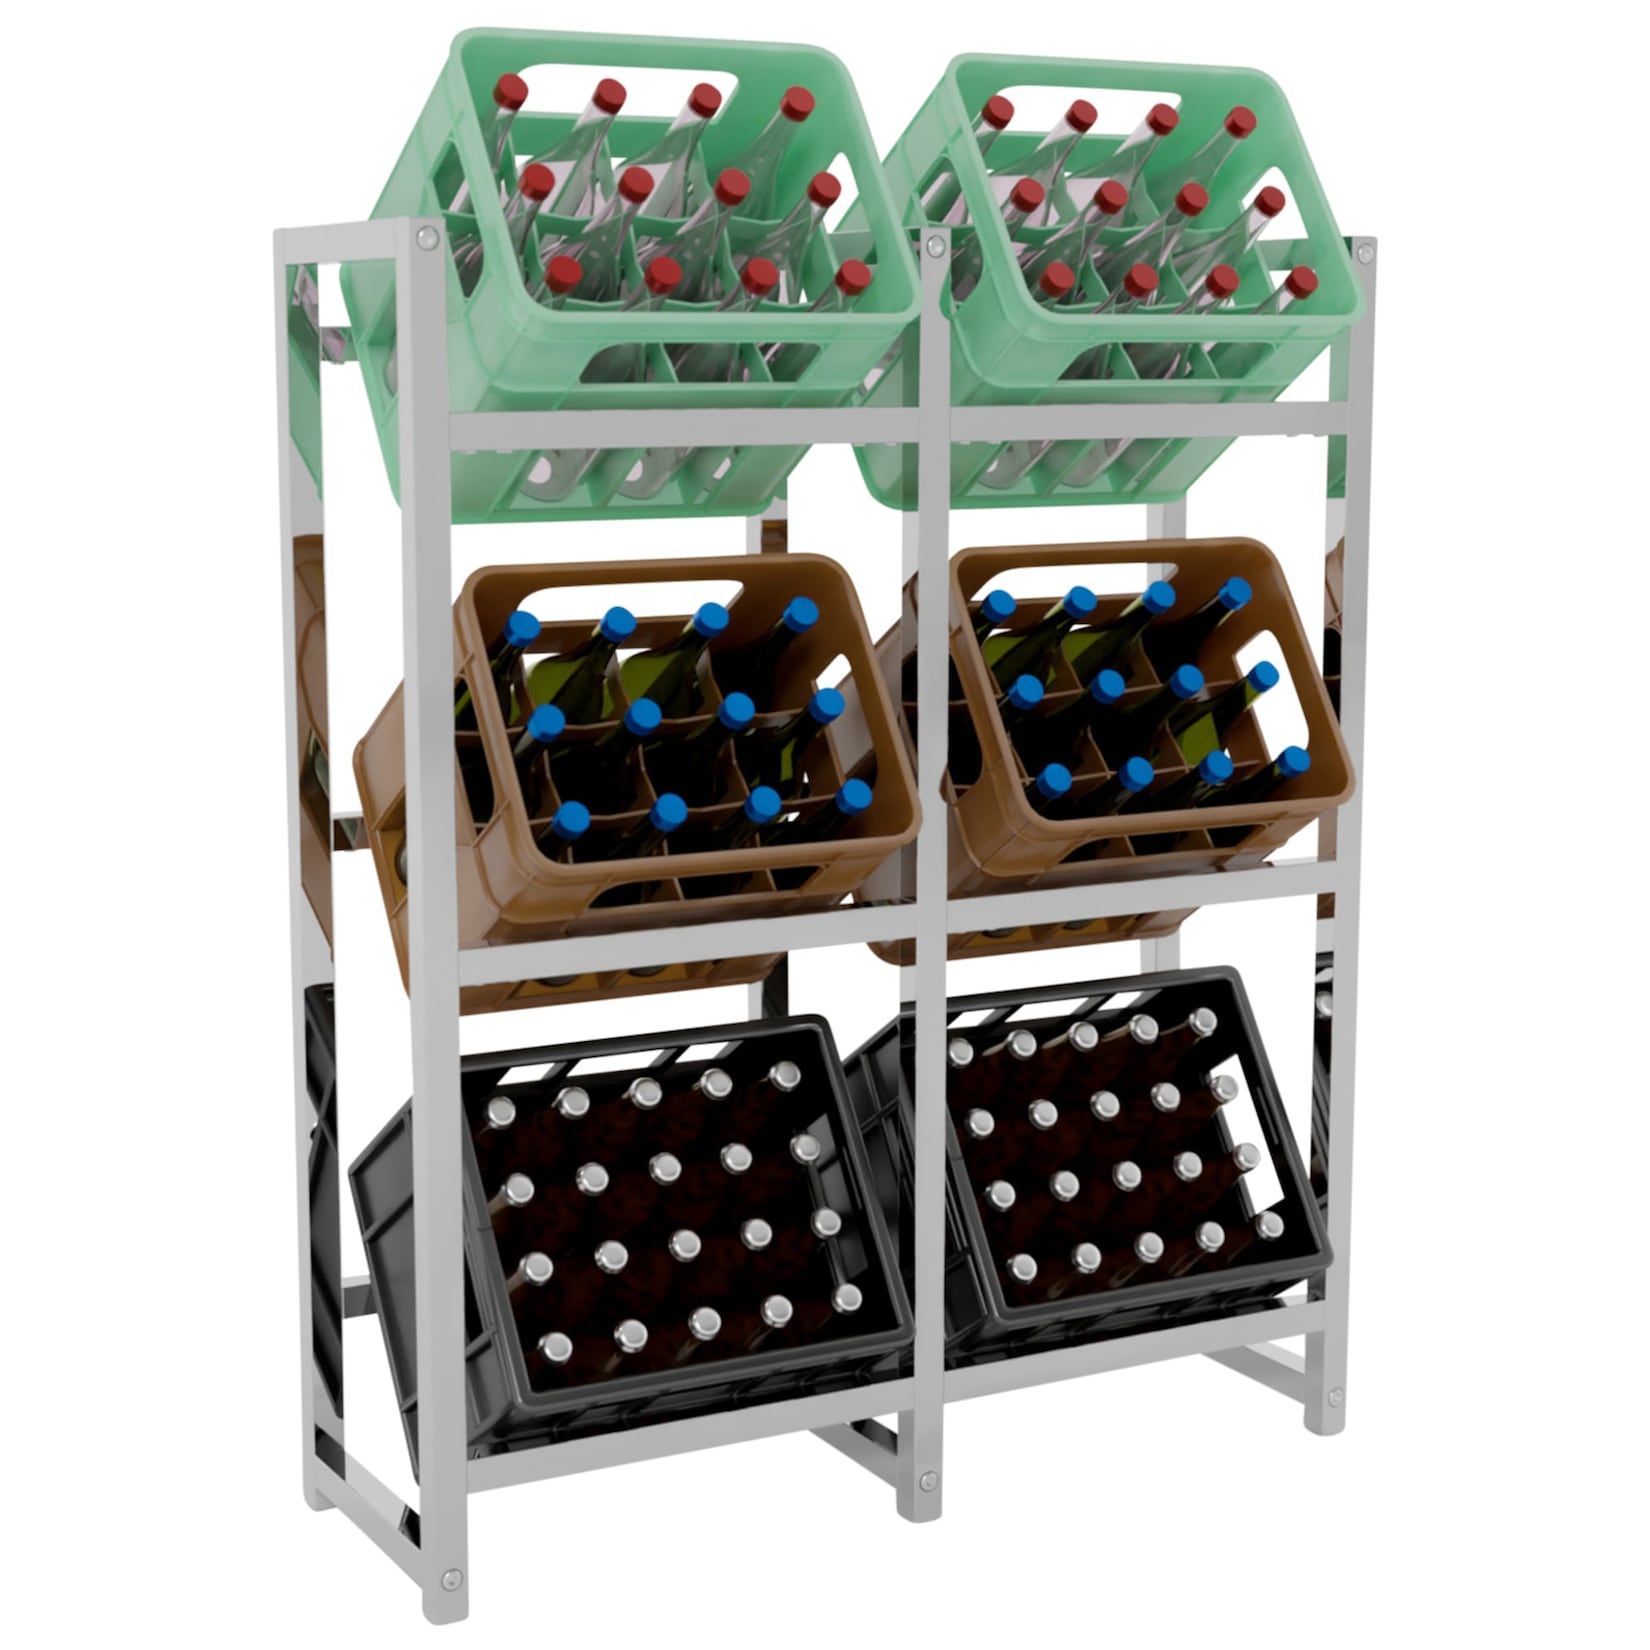 CLP Getränkekistenständer Stack I Platzsparendes robustes Kistenregal für Getränkekisten I In verschiedenen Größen und Farben erhältlich